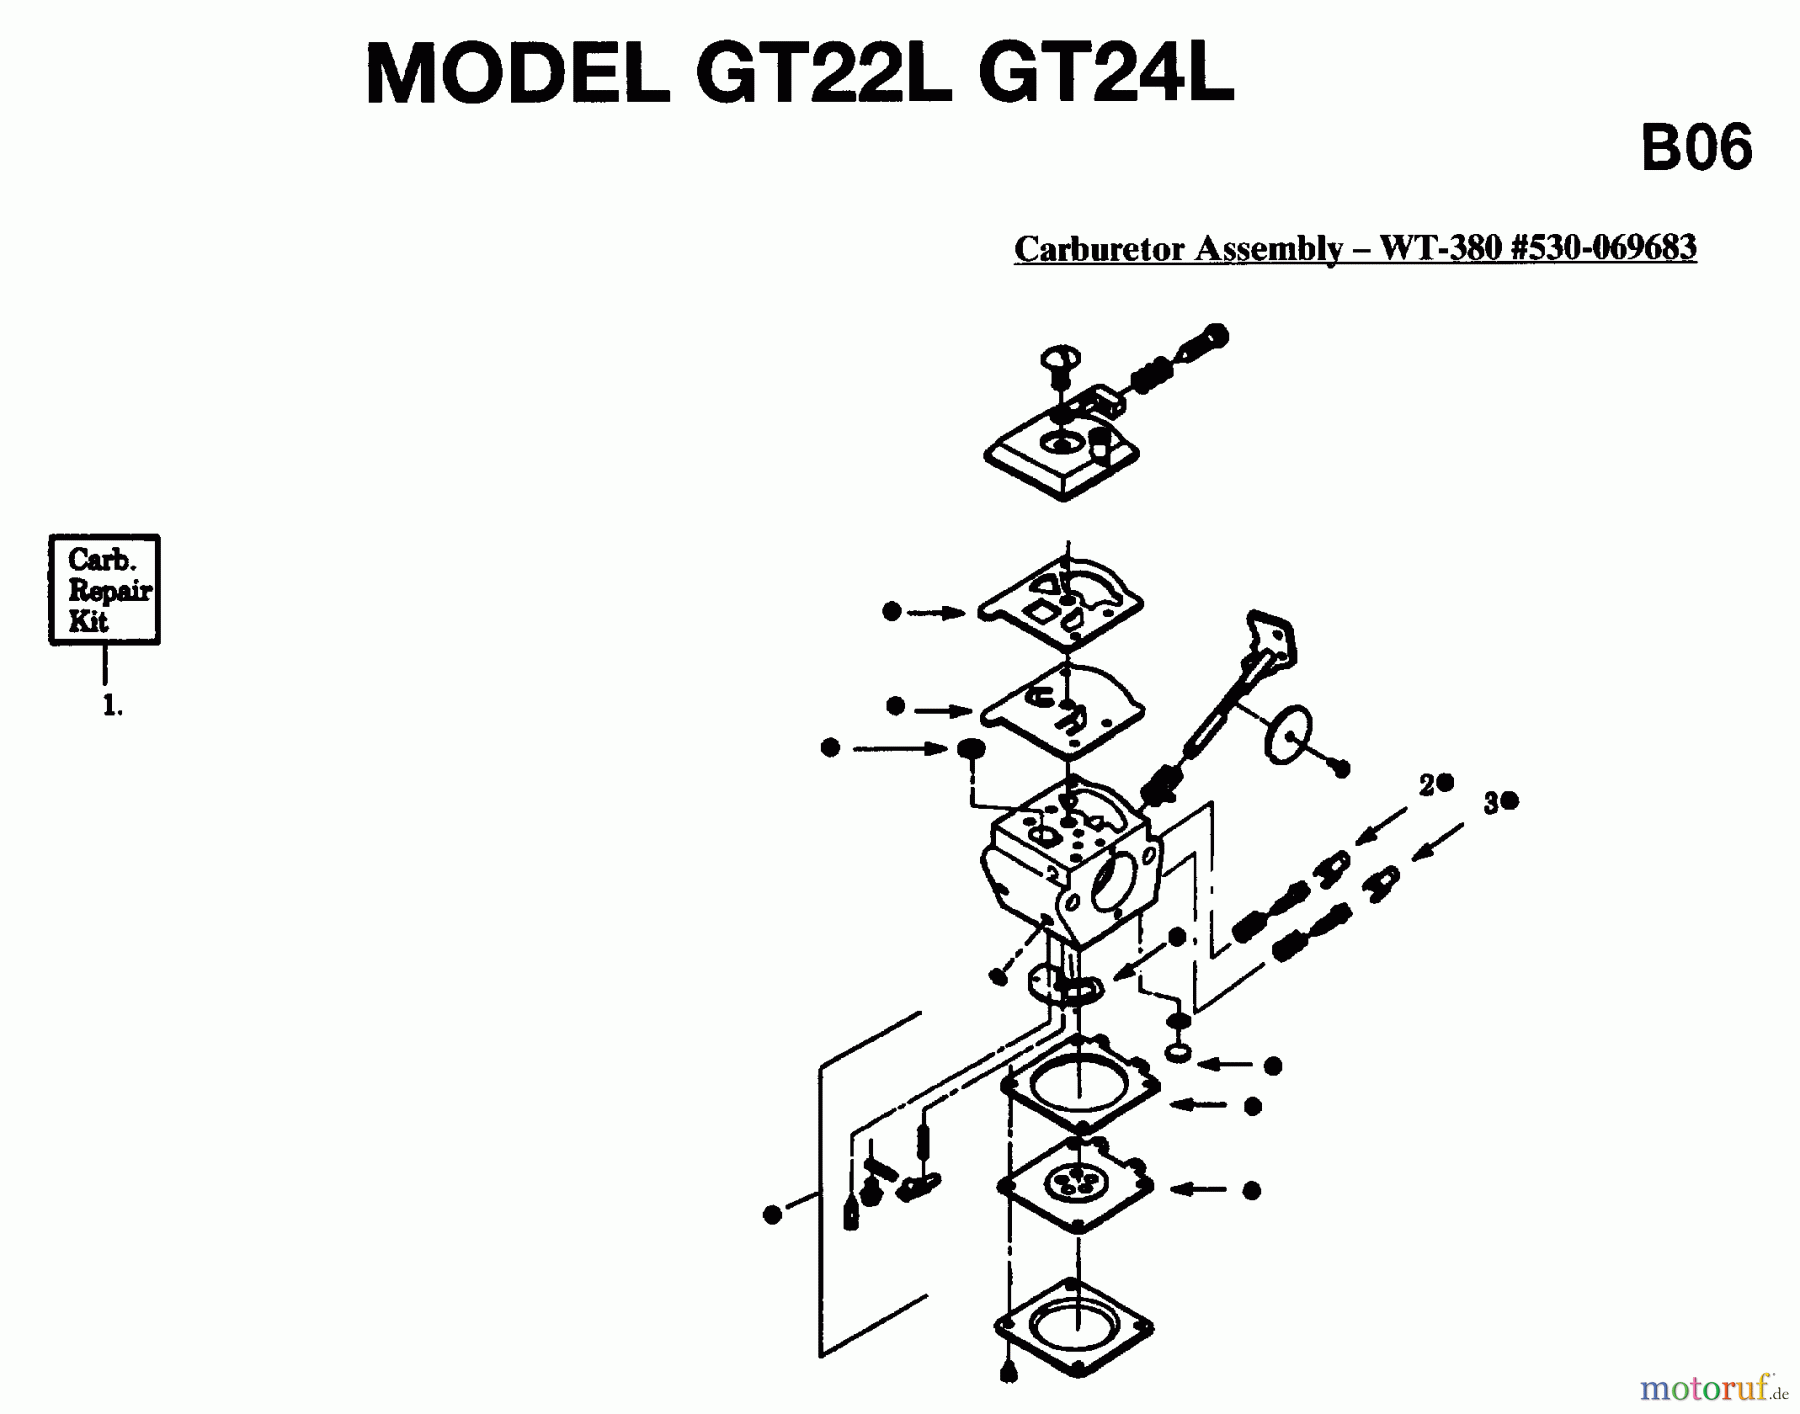  Jonsered Motorsensen, Trimmer GT22L - Jonsered String/Brush Trimmer (1996-03) CARBURETOR DETAILS